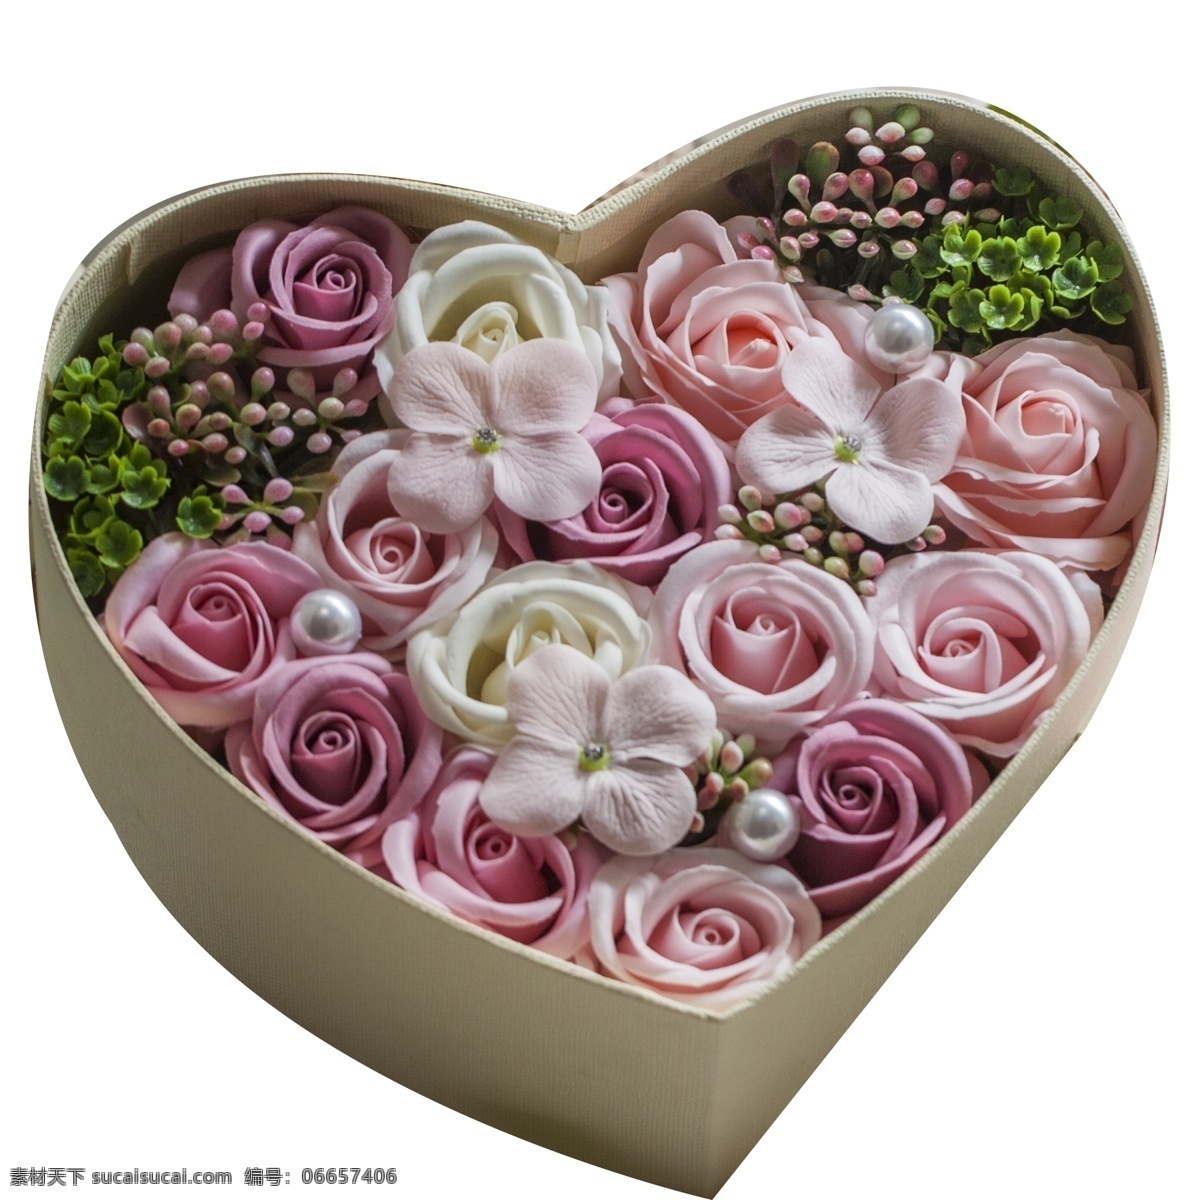 爱心 桃 心 花朵 免 抠 图 爱心桃 漂亮的礼盒 礼物包装盒 粉红色花朵 新鲜花朵 叶子 新鲜 礼盒 免抠图